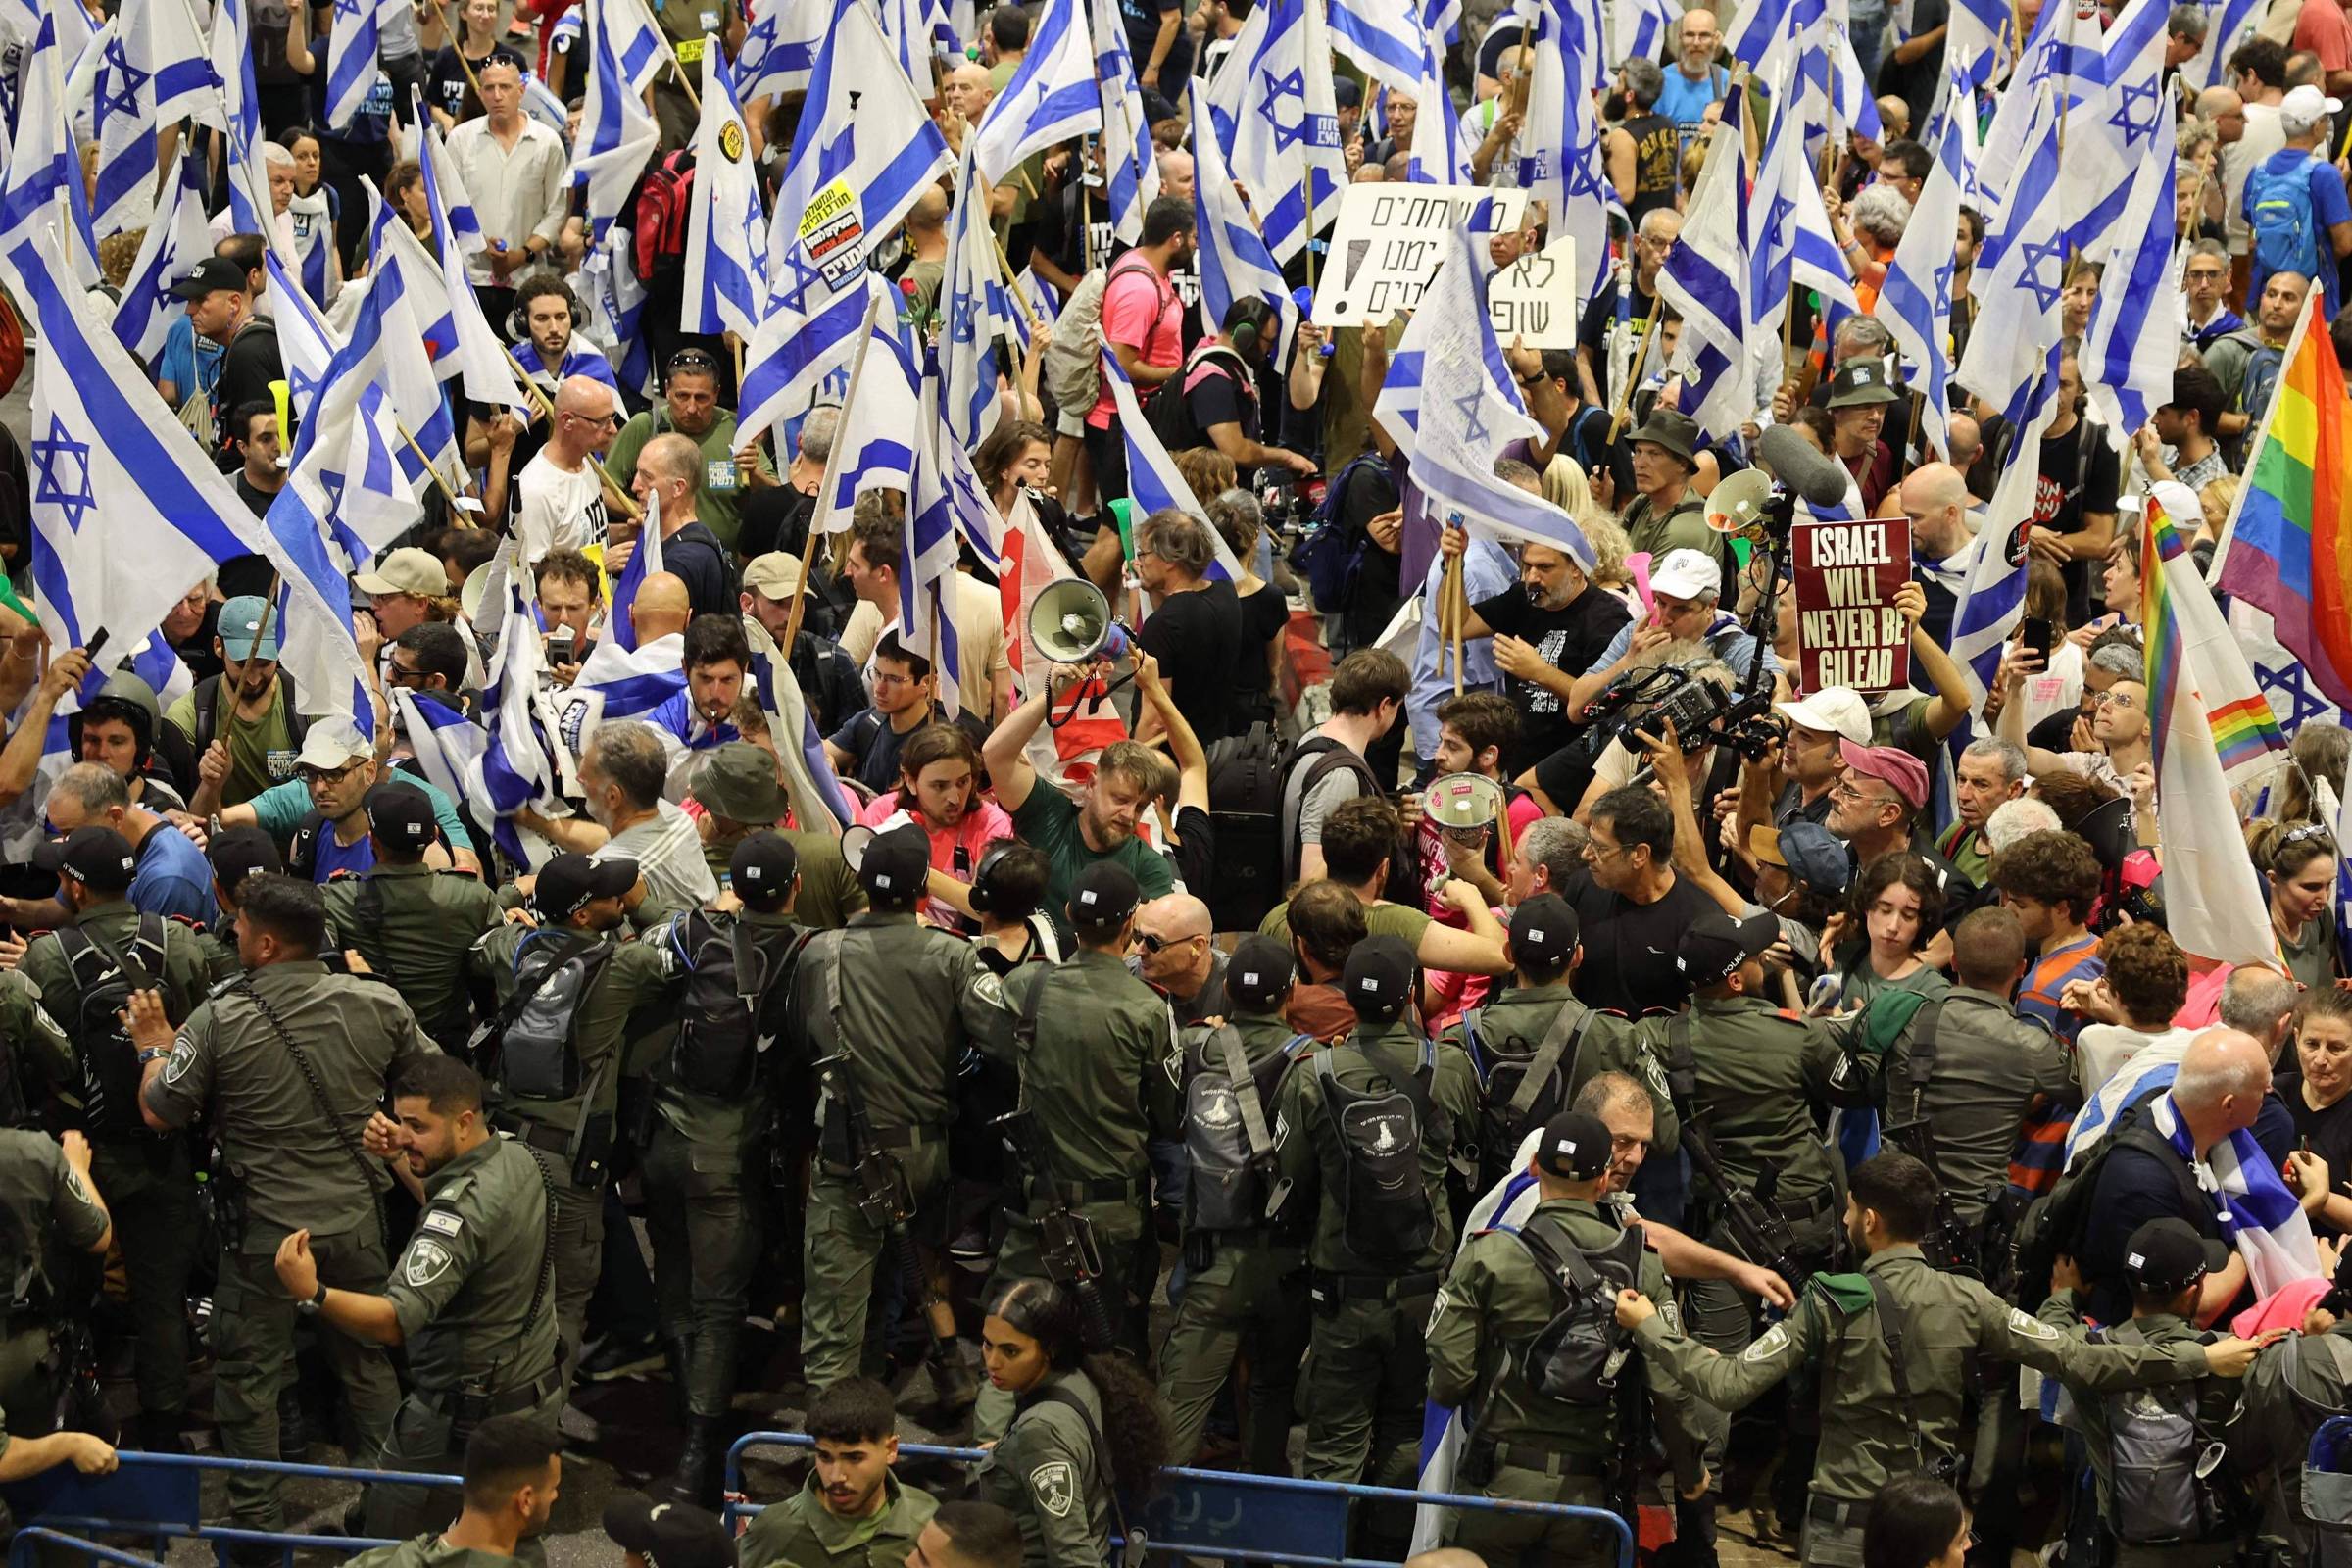 Militares do Exército israelense se opõem à reforma judicial de